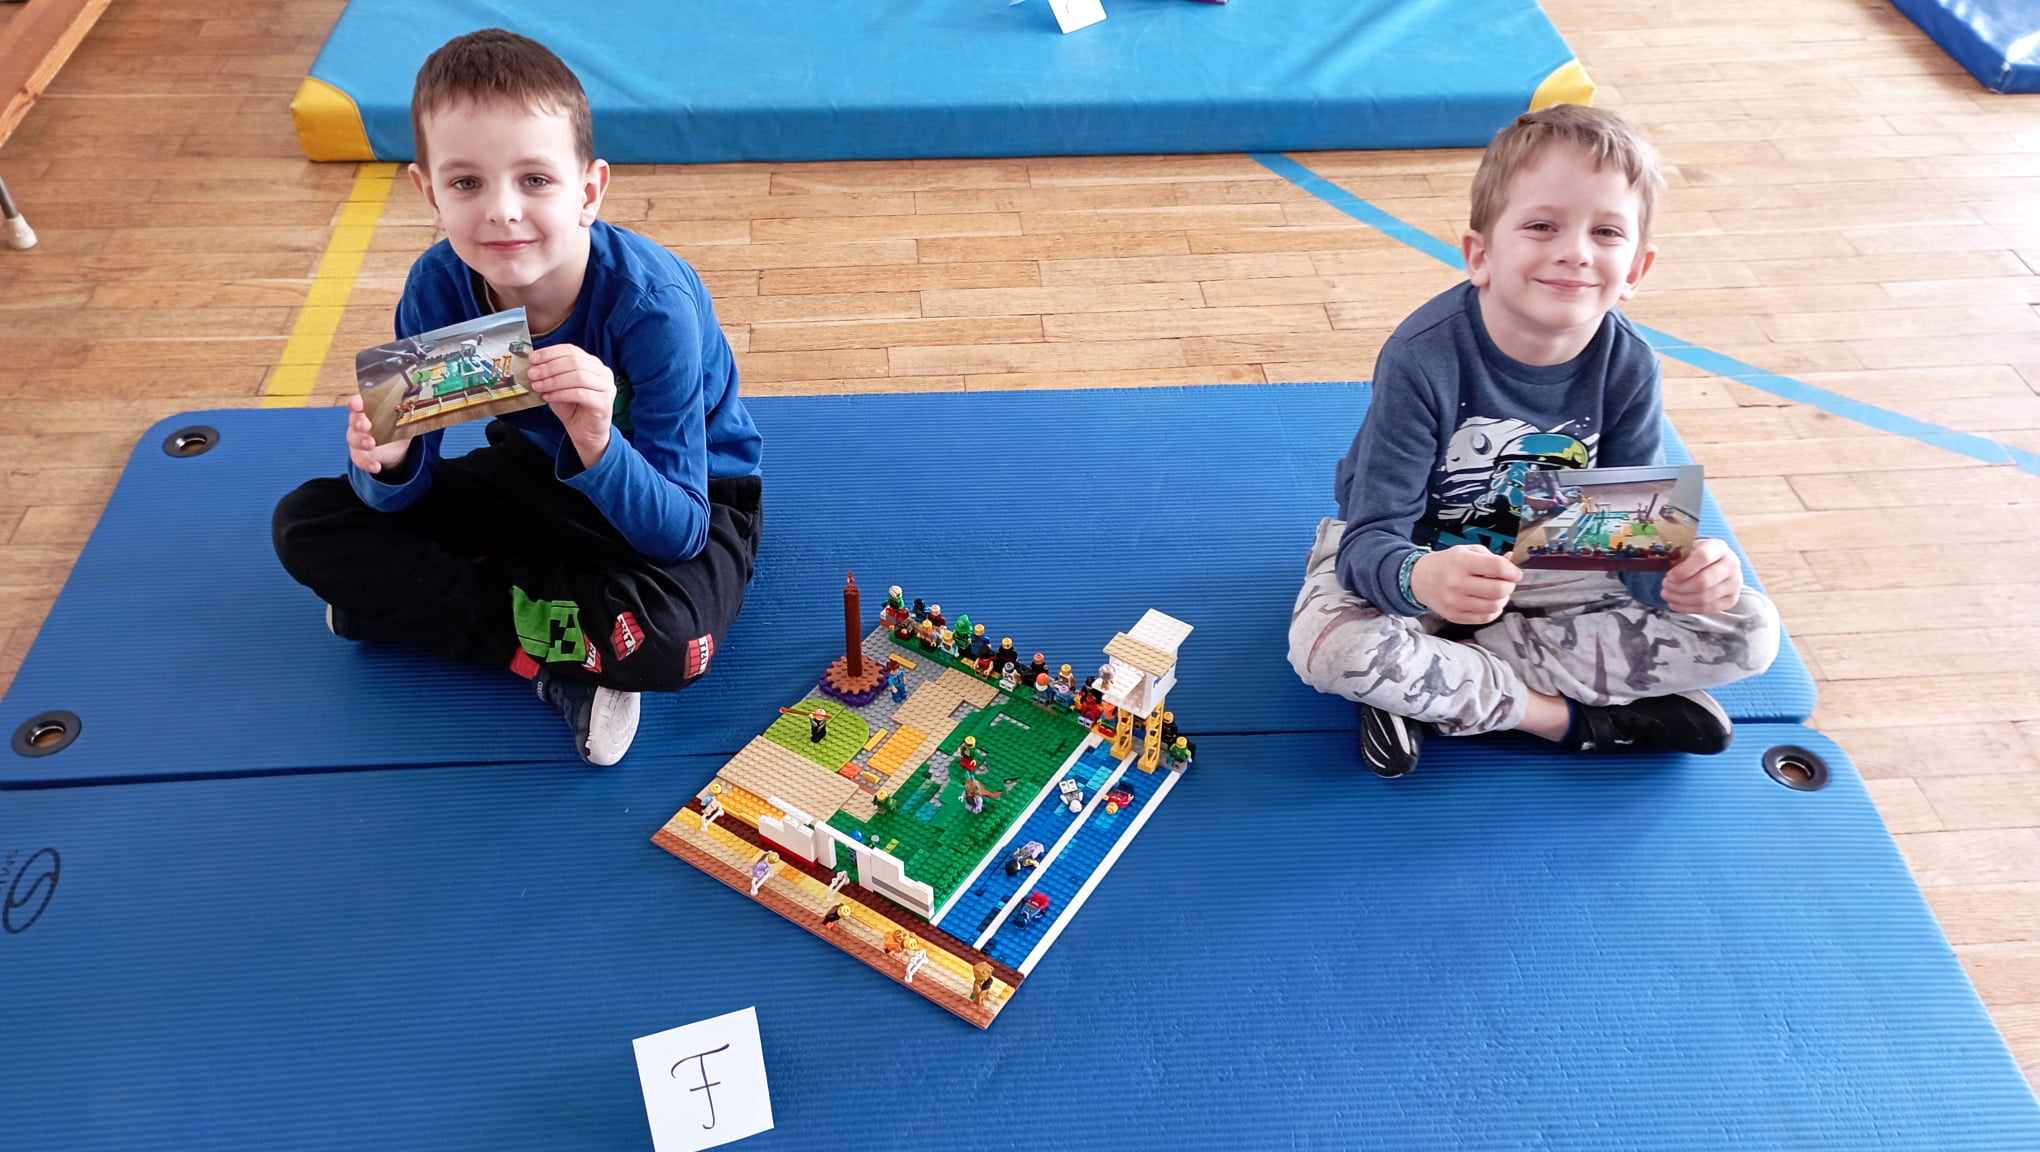 W sali gimnastycznej na niebieskim materacu siedzi dwoje uczniów z klasy 0, w rękach trzymają zdjęcia z projektem swojej budowli. Przed nimi stoi ich budowla z klocków LEGO i etykietka z literą F.